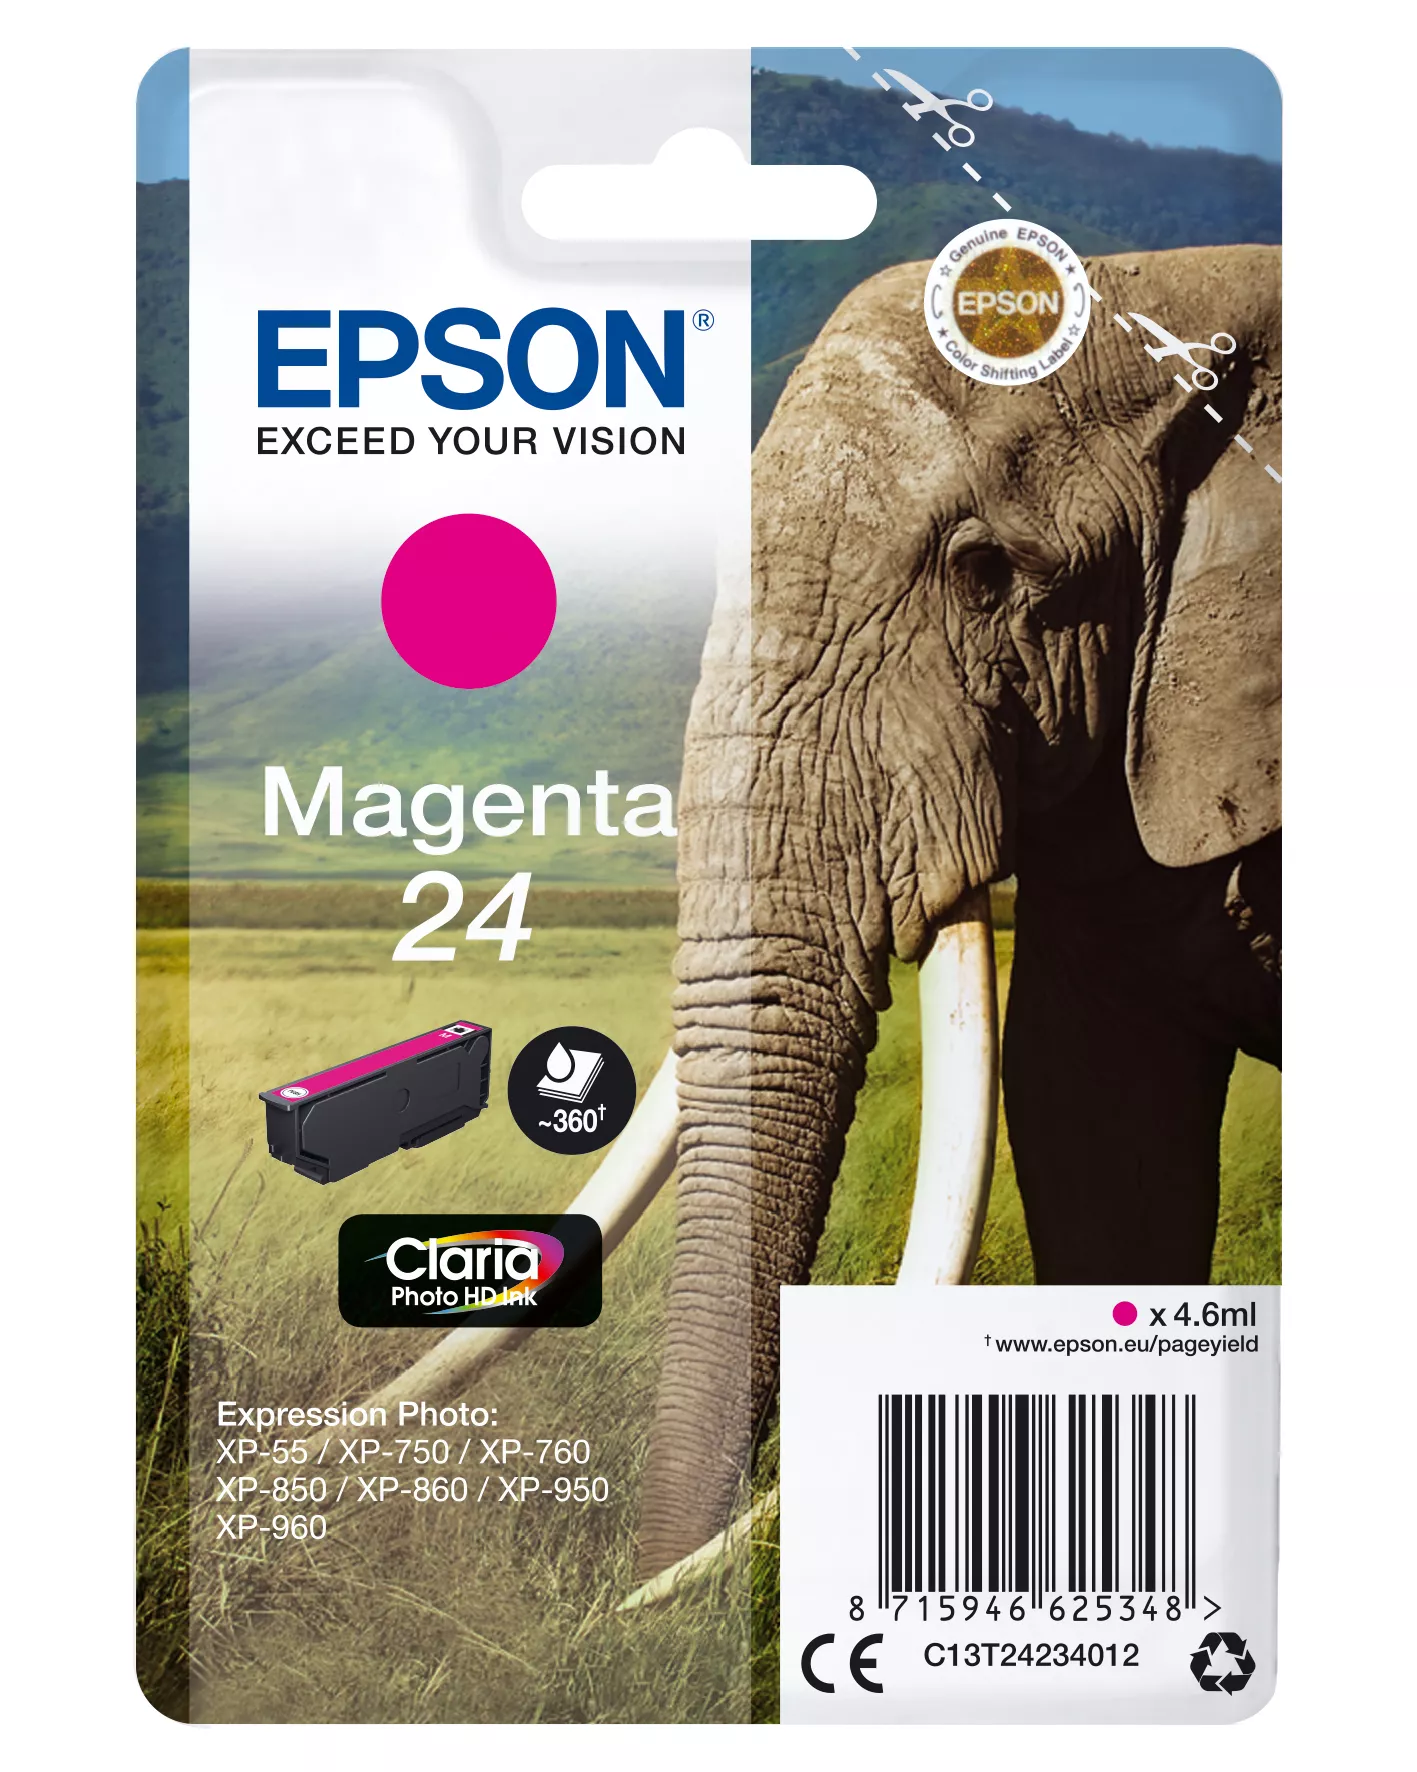 Achat EPSON 24 cartouche encre magenta capacité standard 4.6ml - 8715946625355